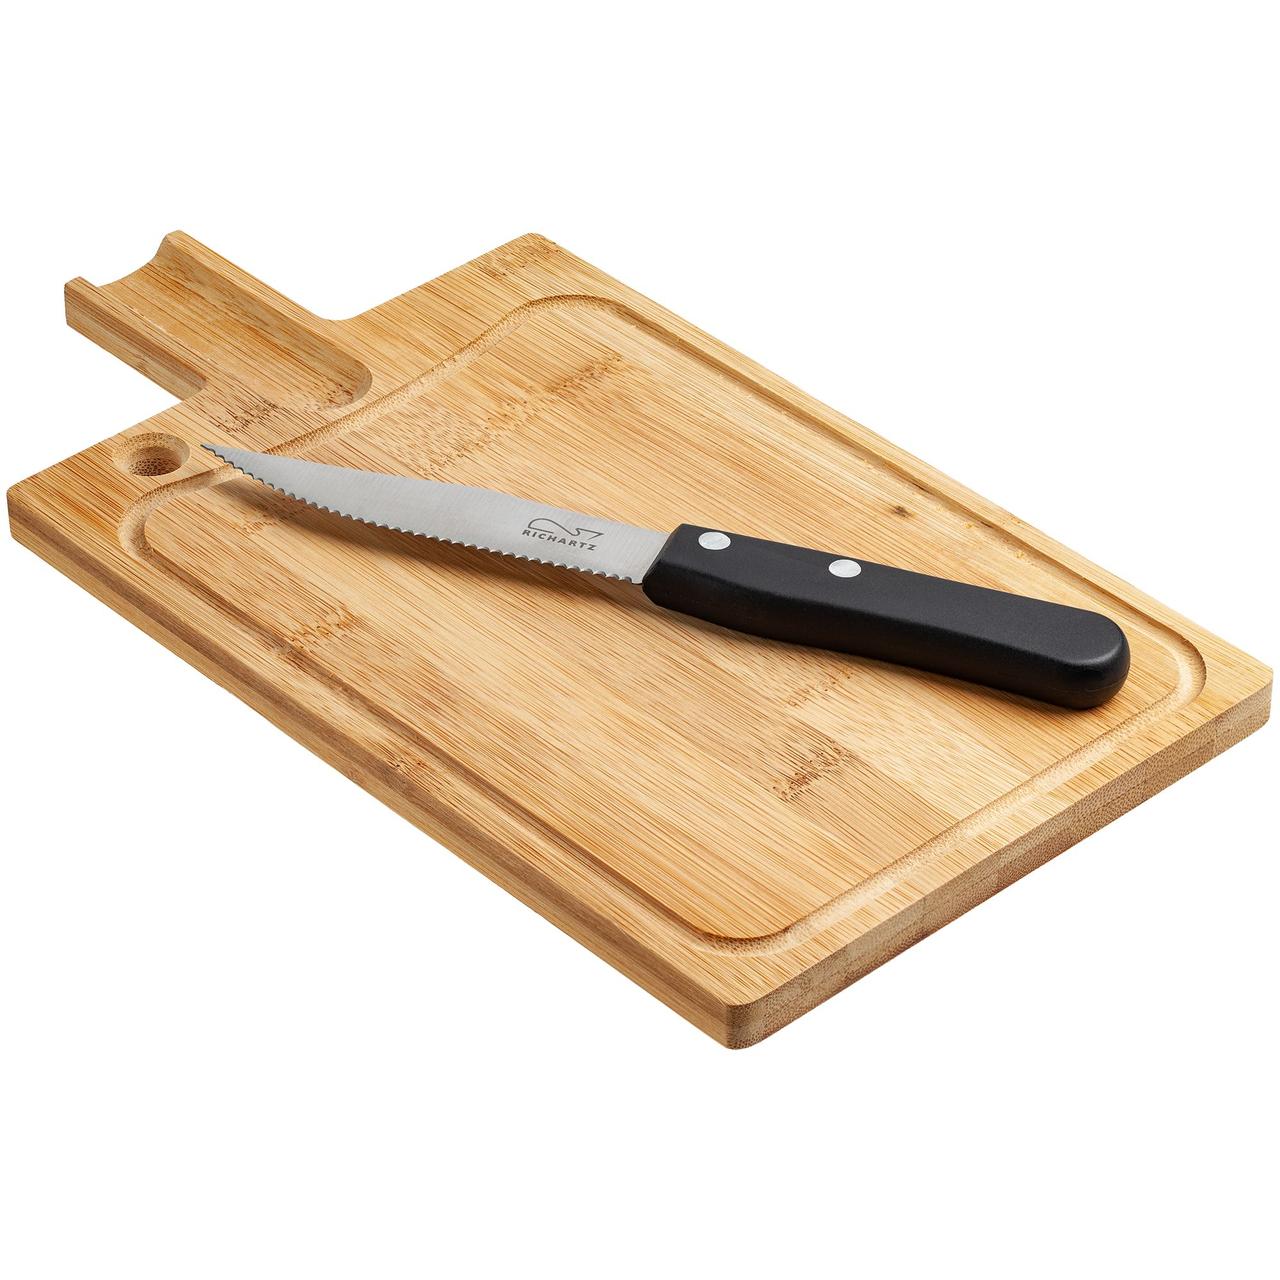 Разделочная доска и нож для стейка Steak (артикул 11983.30)